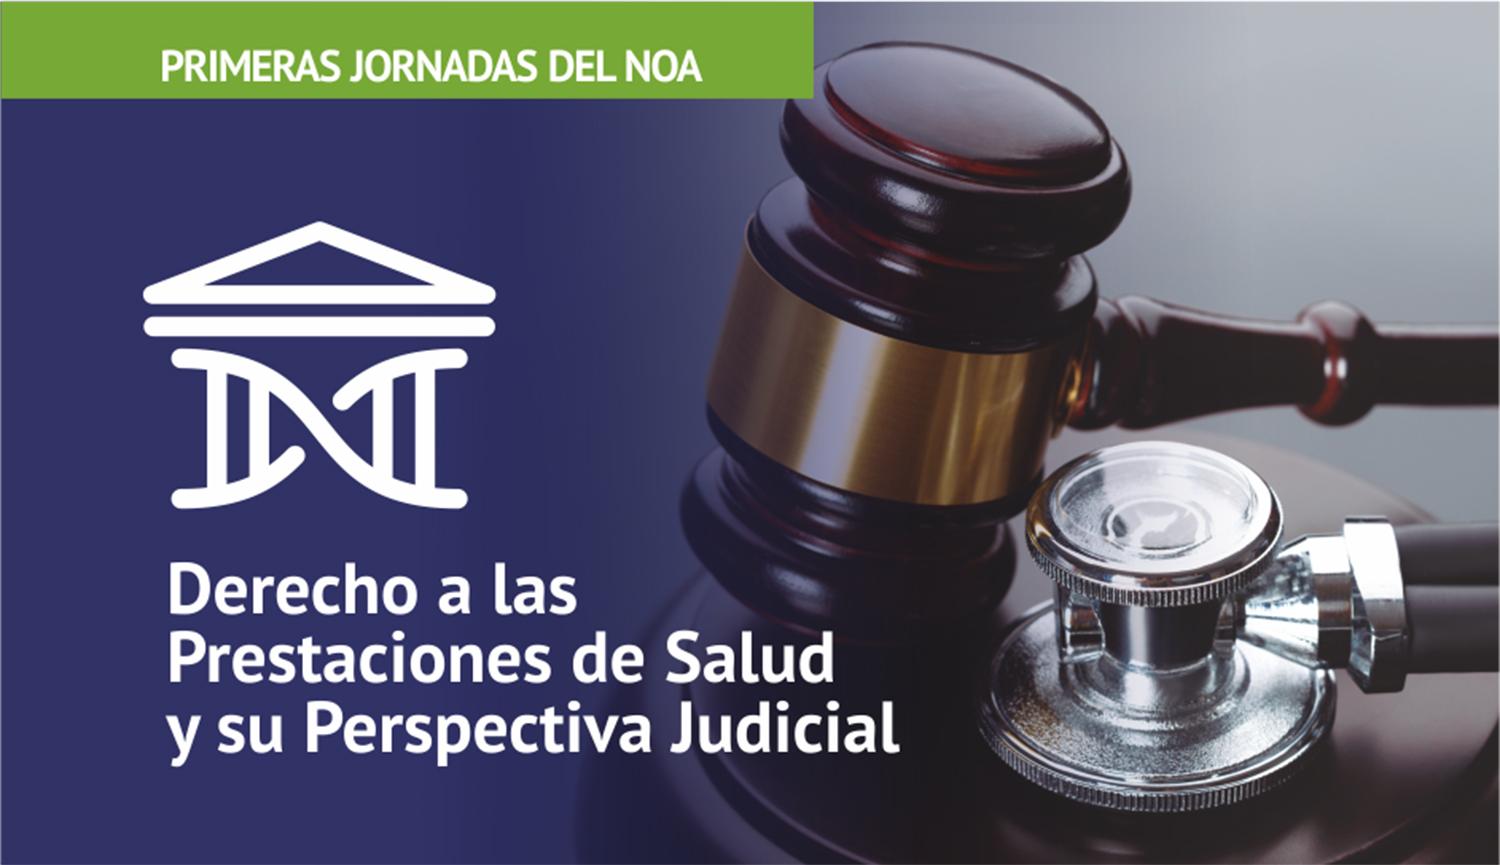 Tucumán será sede de las jornadas “Derecho a las prestaciones de salud y su perspectiva judicial”